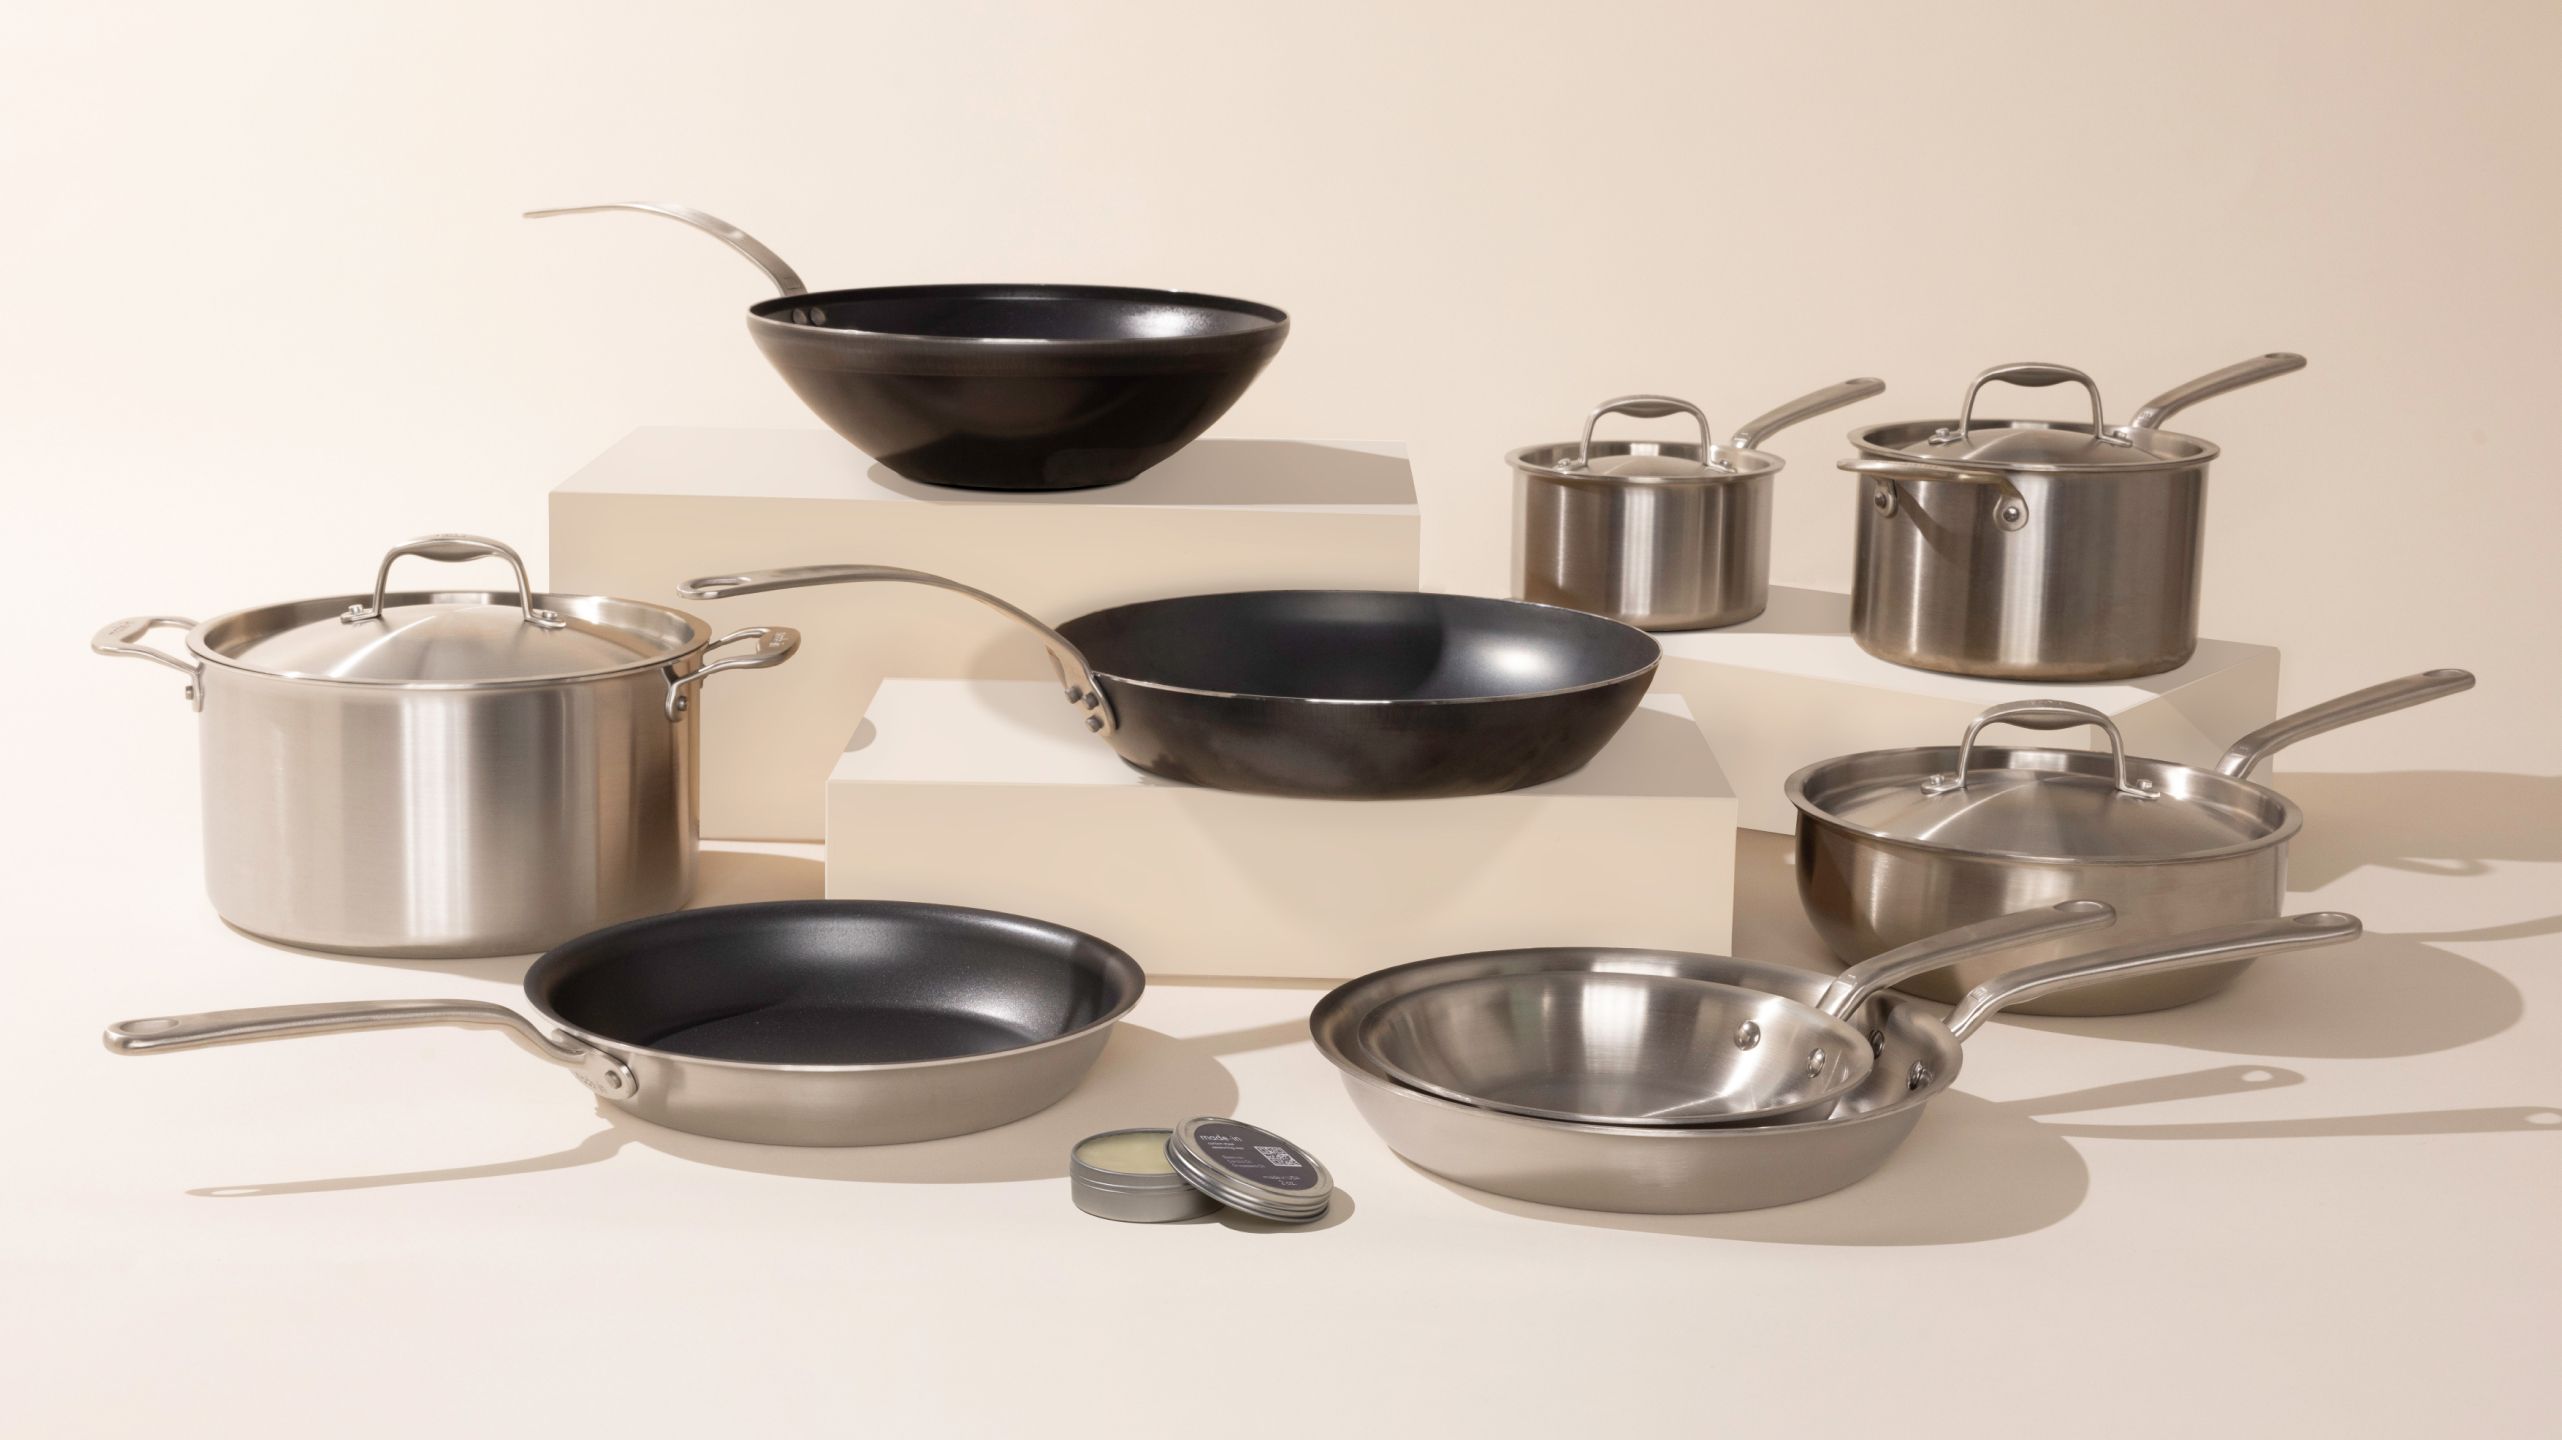 Denmark Tools for Cooks 10 Piece Monaco Nonstick Aluminum Cookware Pots  Pans Set, Black 